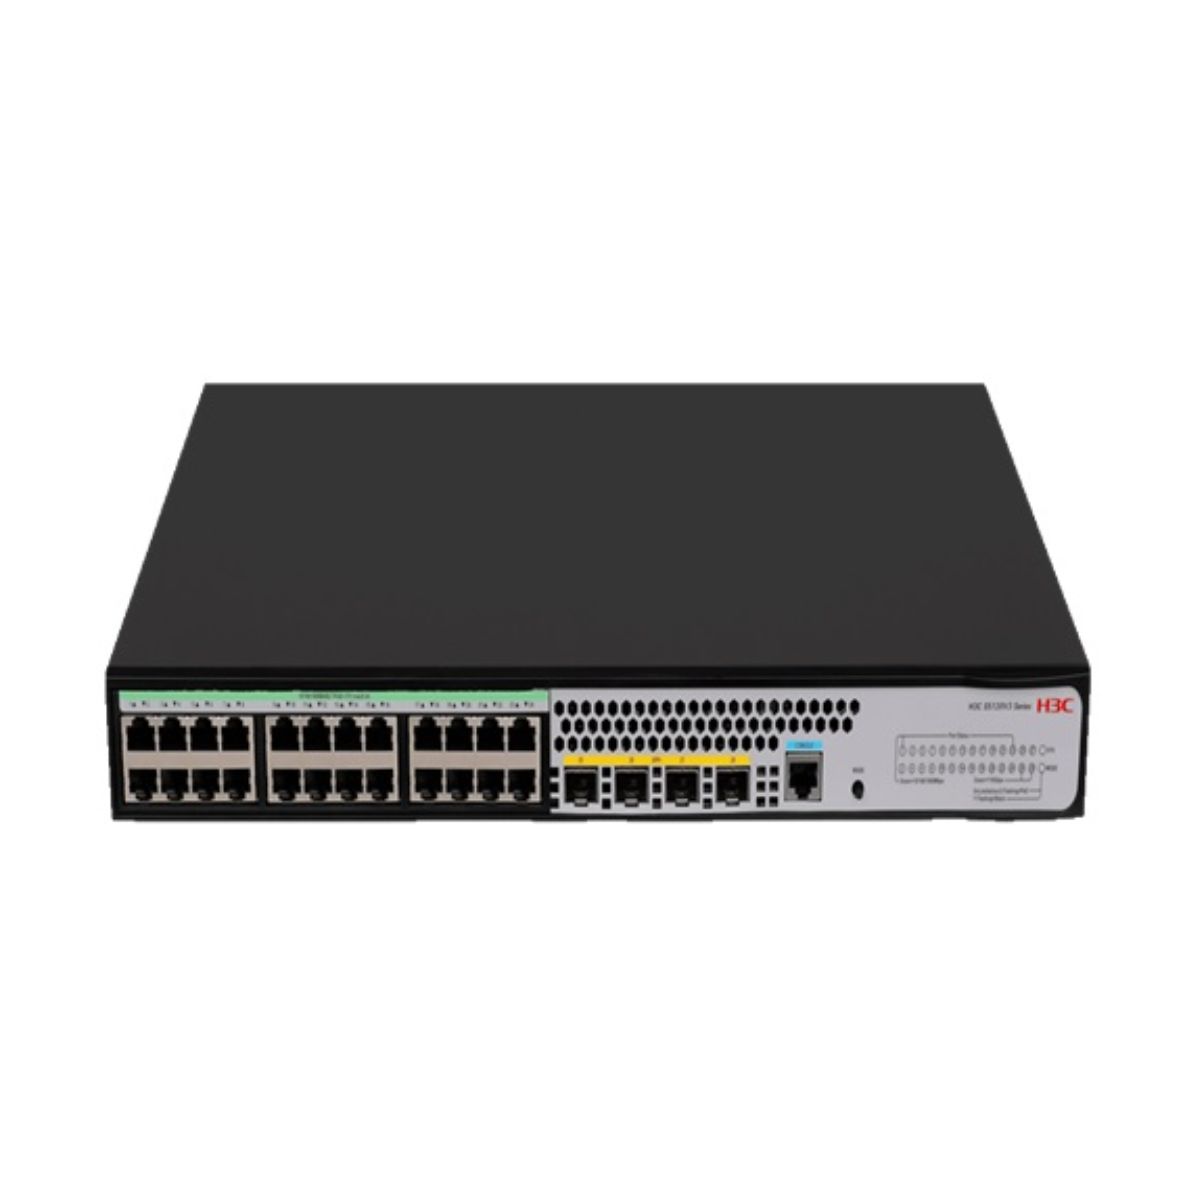 Switch chia mạng 28 cổng Layer 2+ H3C LS-5120V3-28P-PWR hỗ trợ PoE 240W, 24 cổng 10/100/1000 BASE-T PoE/PoE+, 4 cổng SFP 1000Base-X